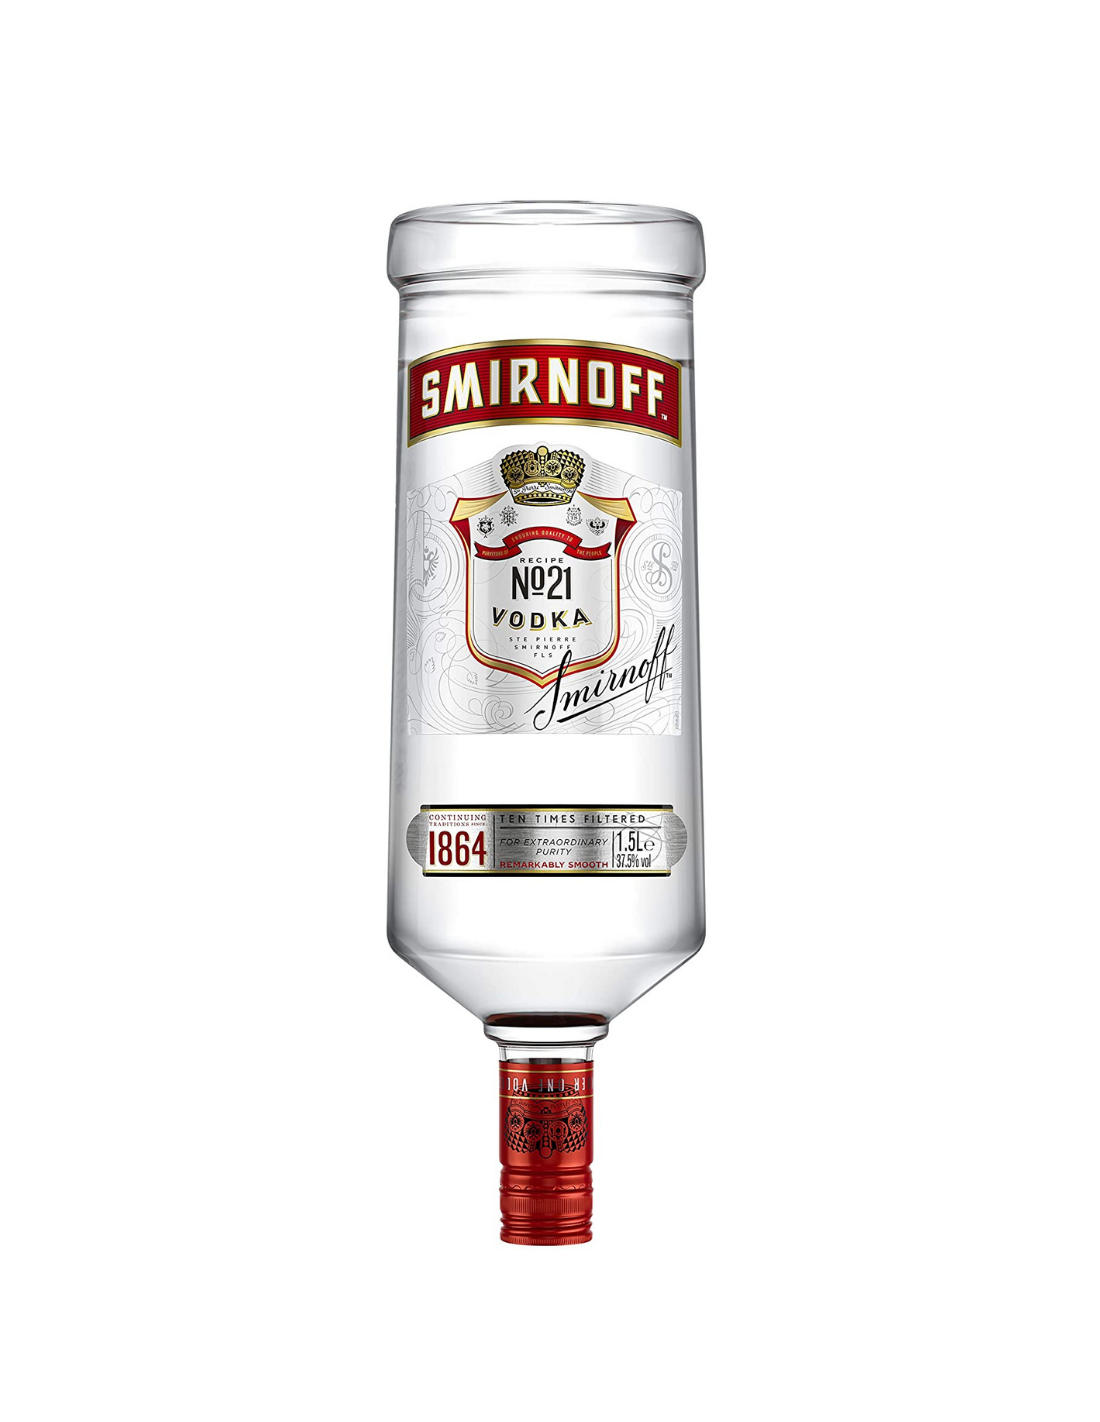 Vodca Smirnoff Red Label 1.5L, 40% alc., Rusia alcooldiscount.ro